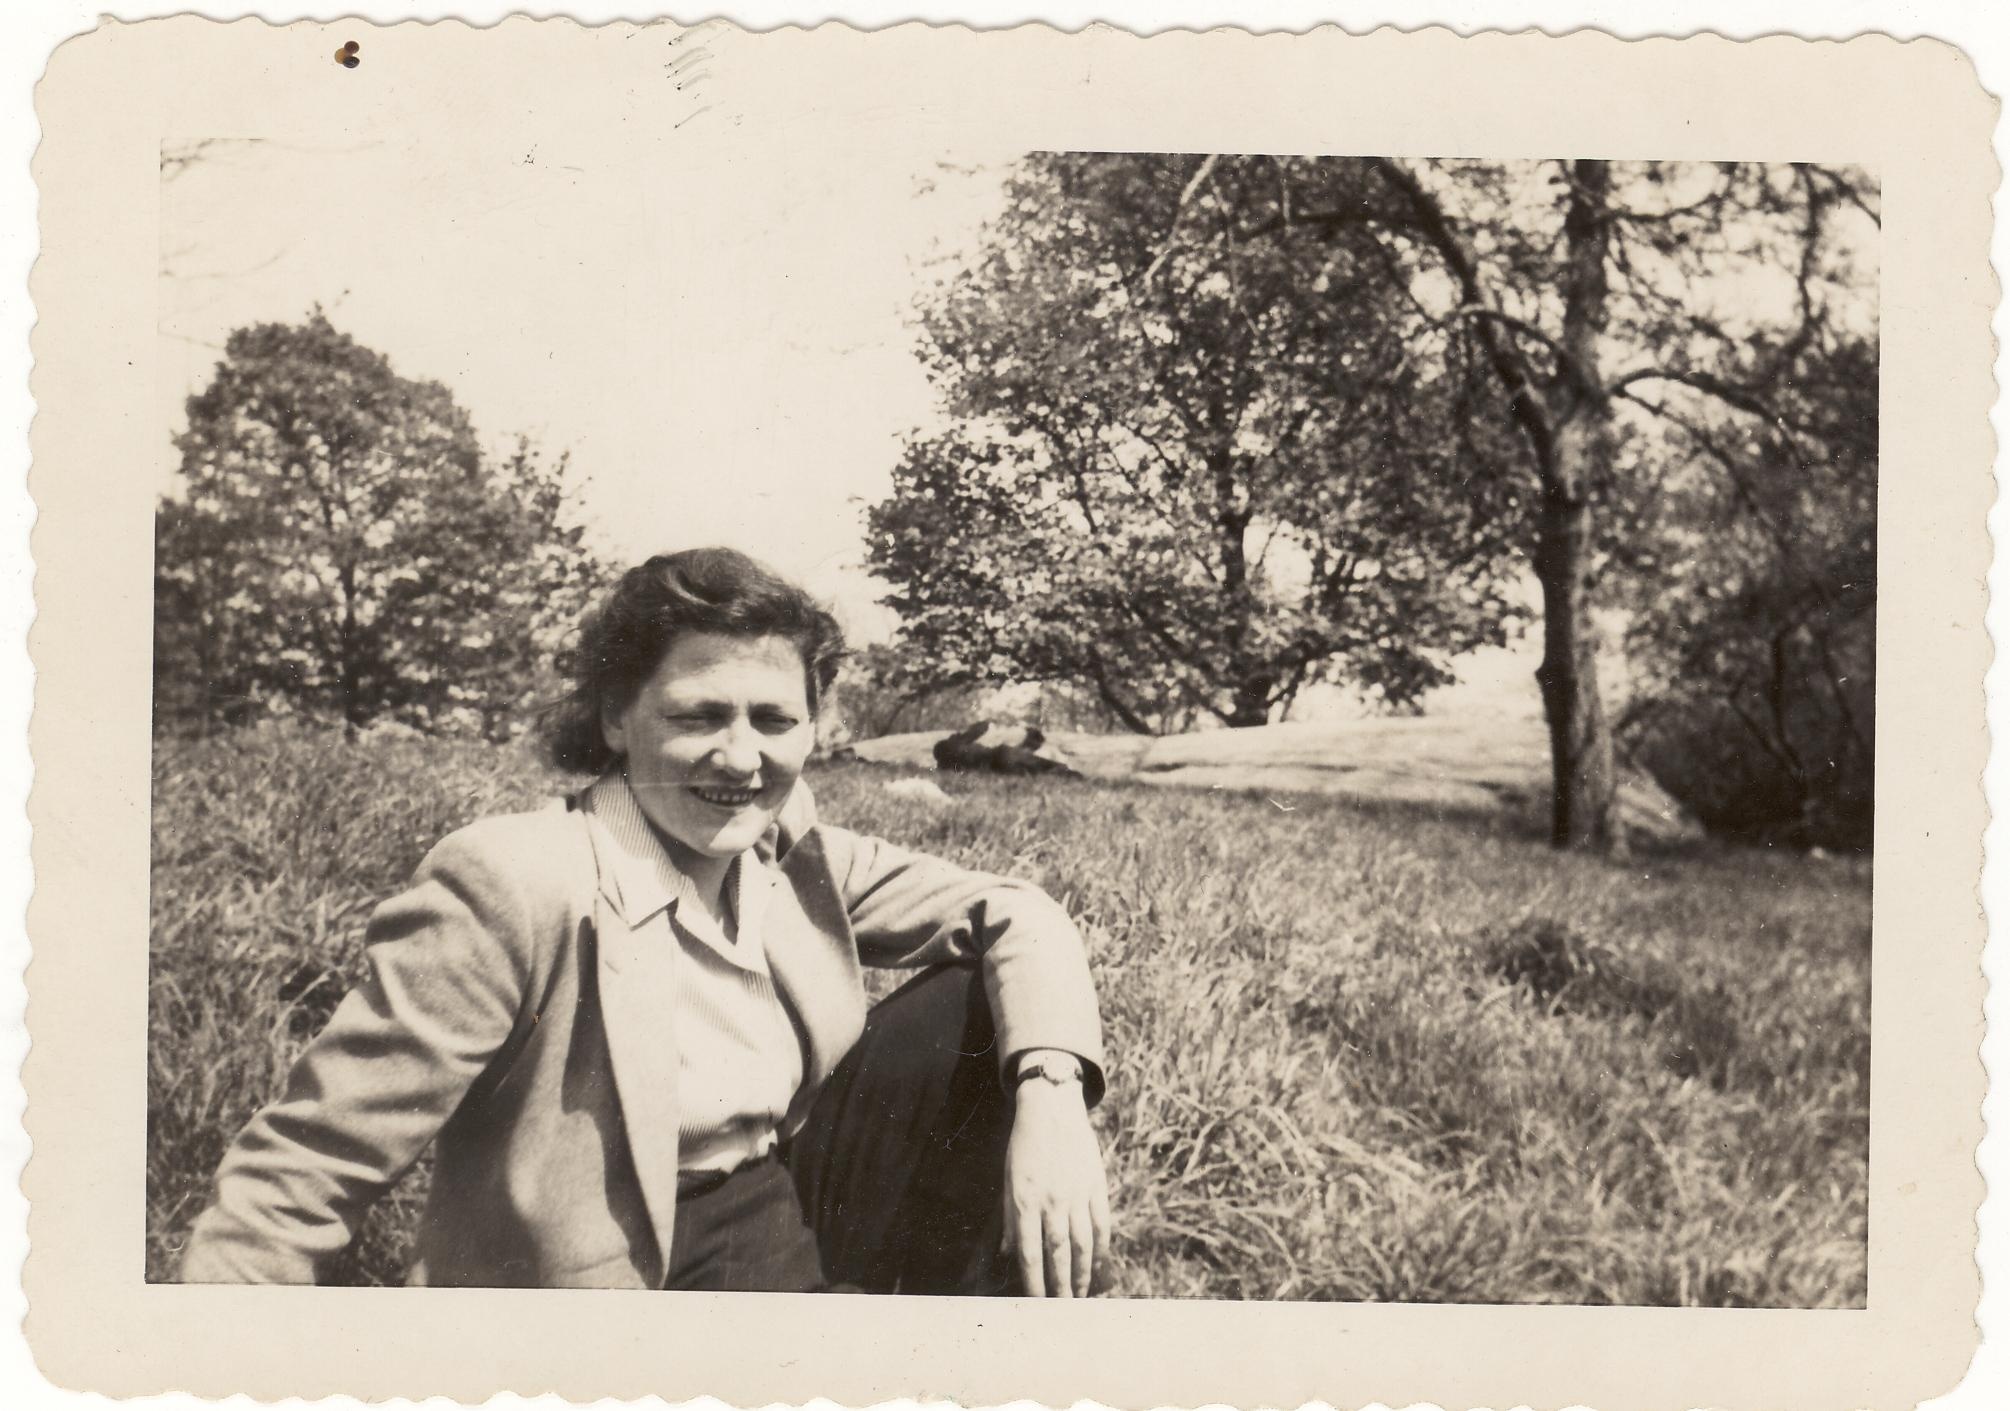 Marie Jahoda sitzt in einer hellen Jacke mit Kragen in einem Park. Sie trägt die Haare zurückgesteckt. Im Hintergrund befinden sich hohes Gras und einige Bäume.  © Archiv für die Geschichte der Soziologie in Österreich 